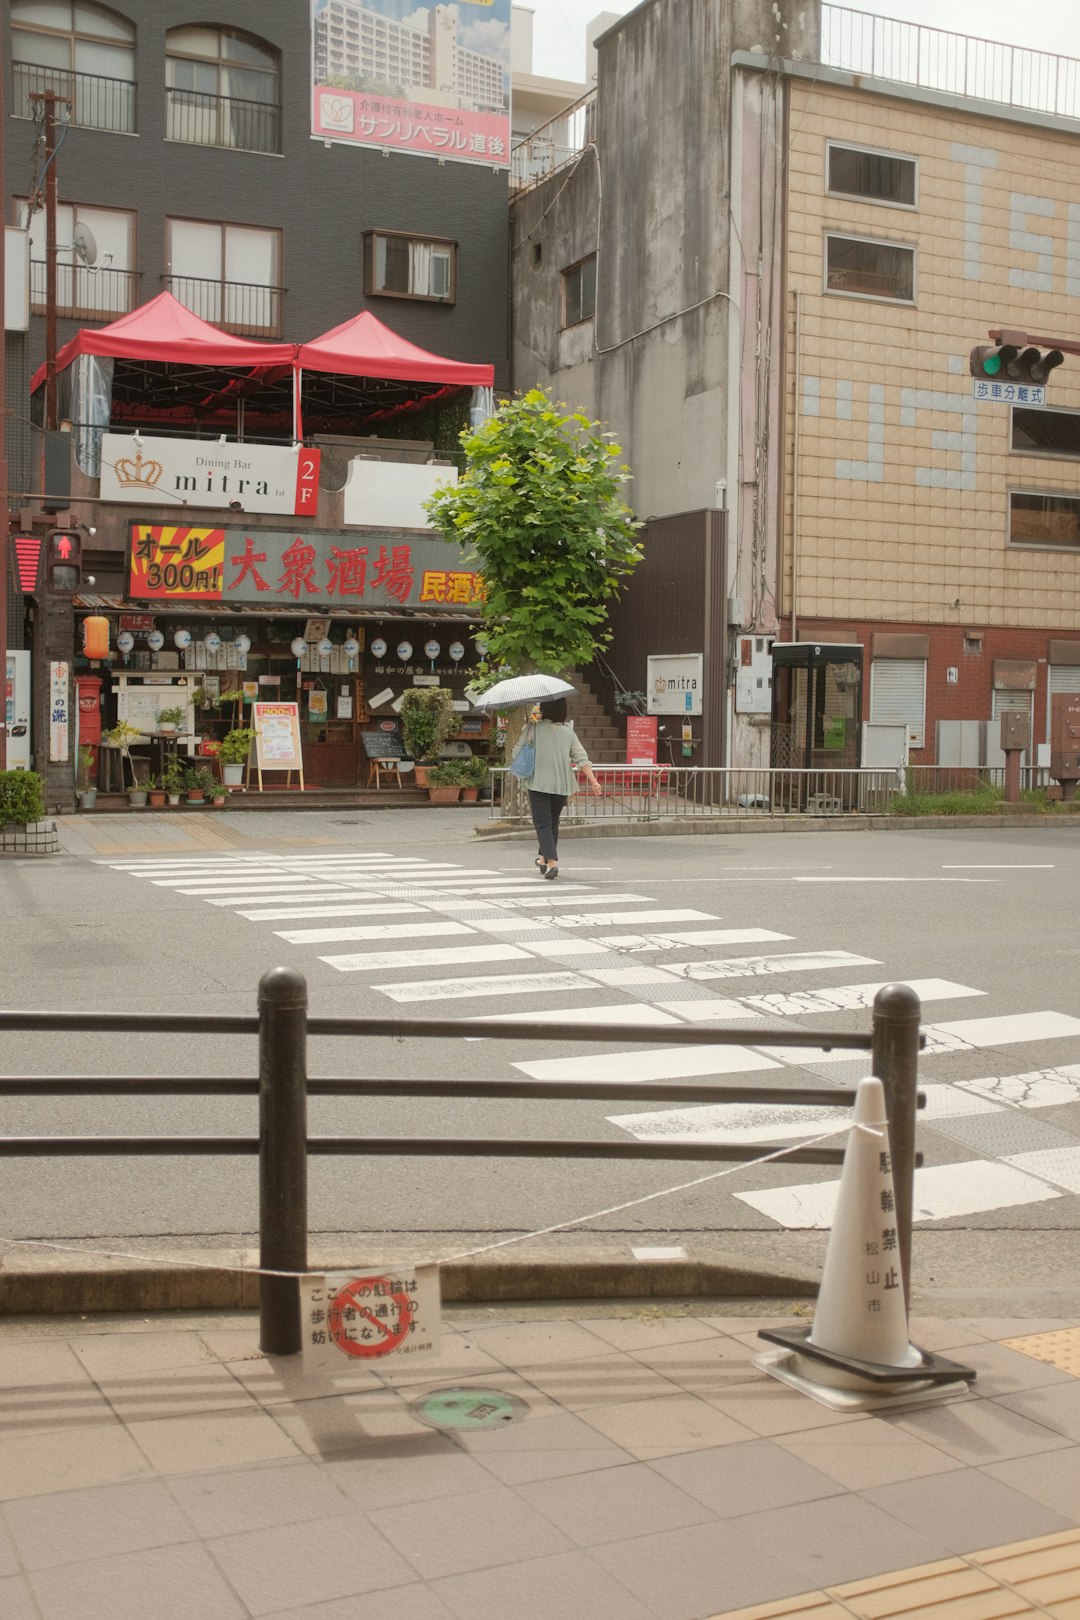 man in white shirt and pants walking on pedestrian lane during daytime